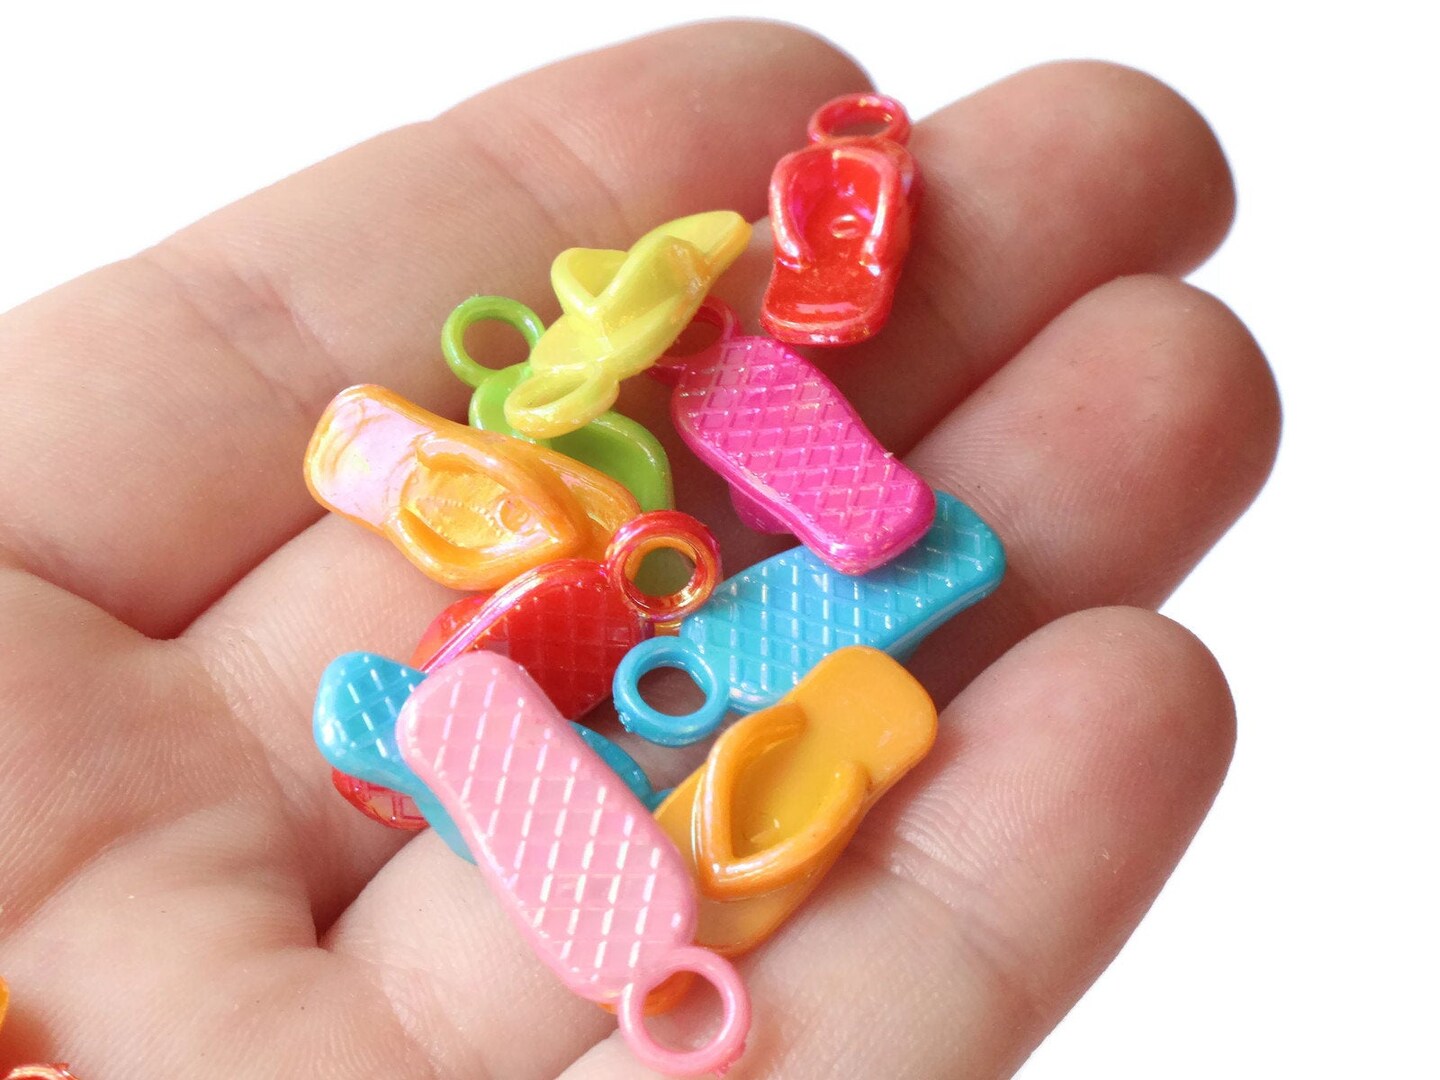 40 22mm Flip Flop Charms Mixed Color Sandal Charms Miniature Plastic Shoe Beads bI2